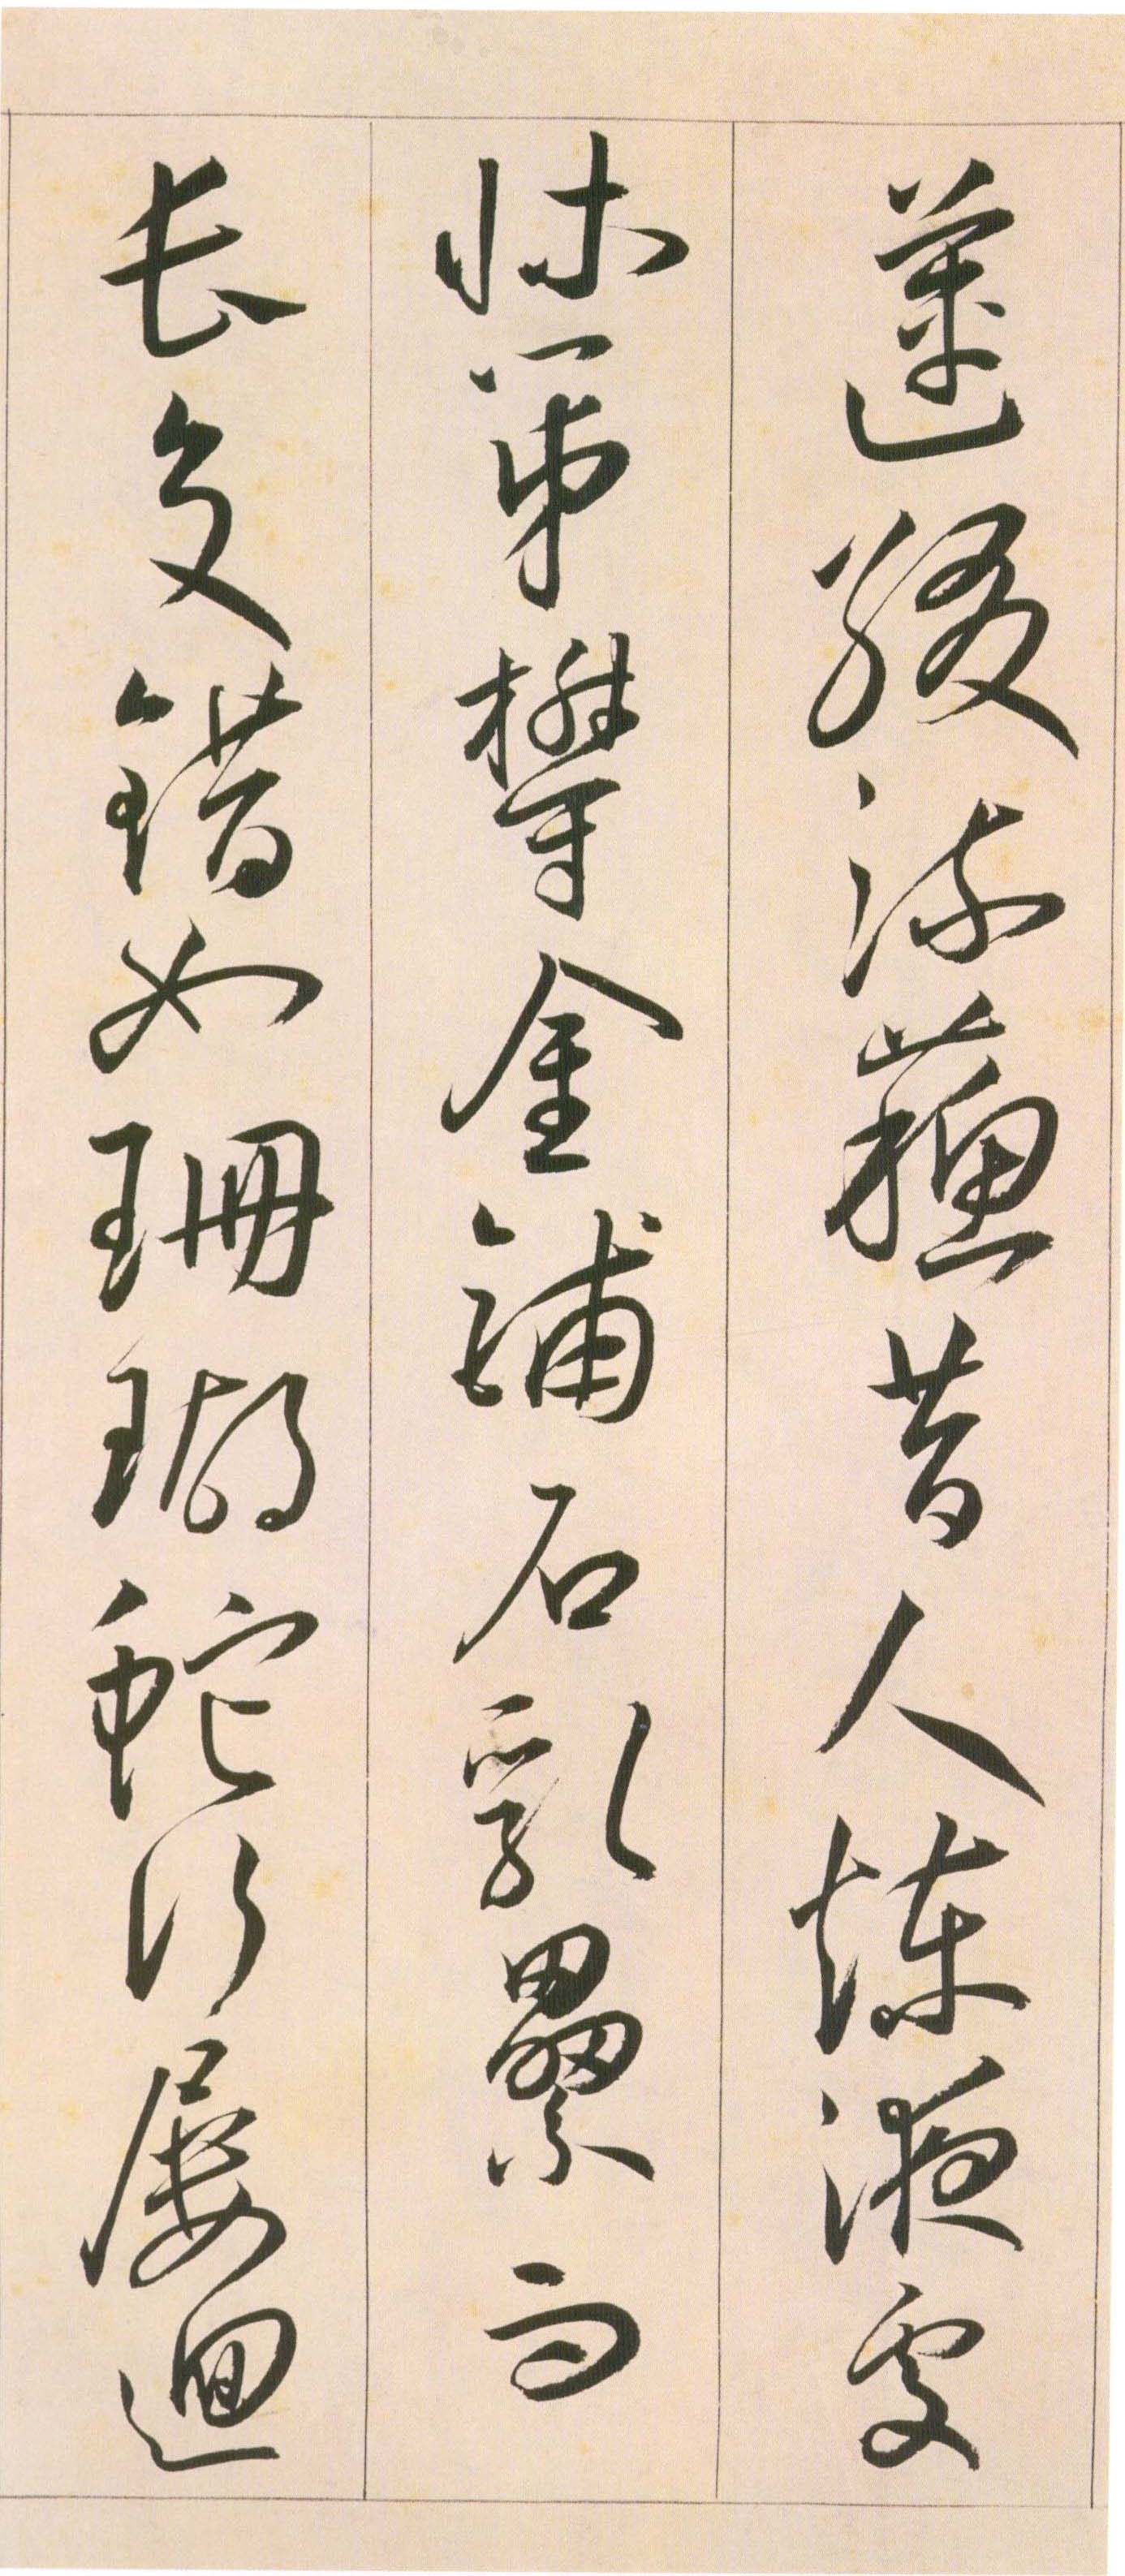 王宠《自书游包山诗》卷-天津艺术博物院藏(图27)